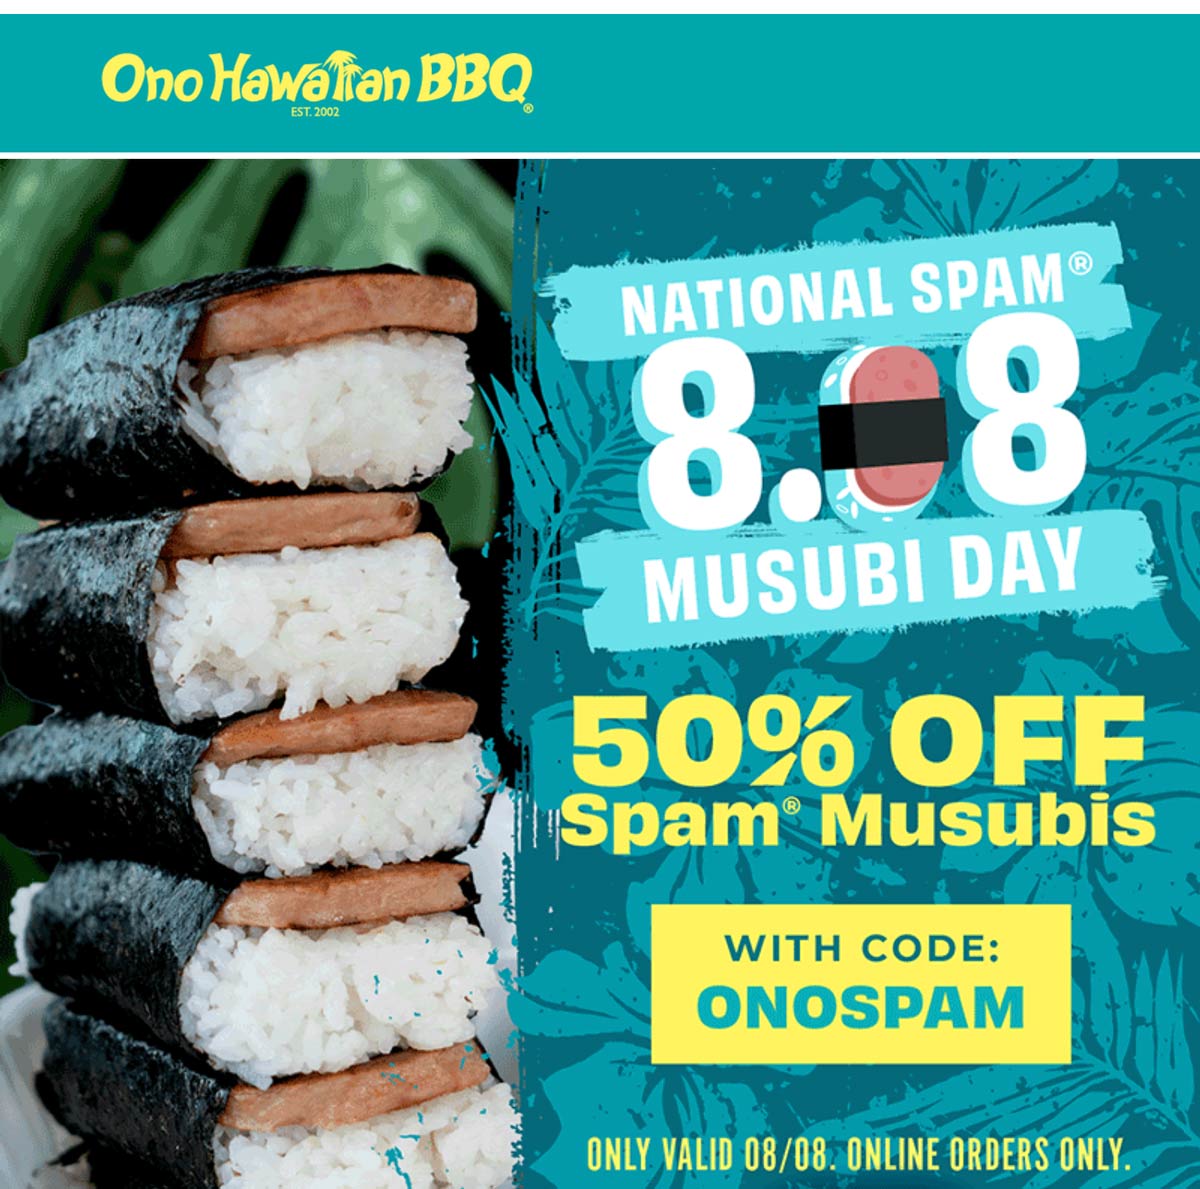 Ono Hawaiian BBQ restaurants Coupon  50% off spam musubis today at Ono Hawaiian BBQ restaurants via promo code ONOSPAM #onohawaiianbbq 